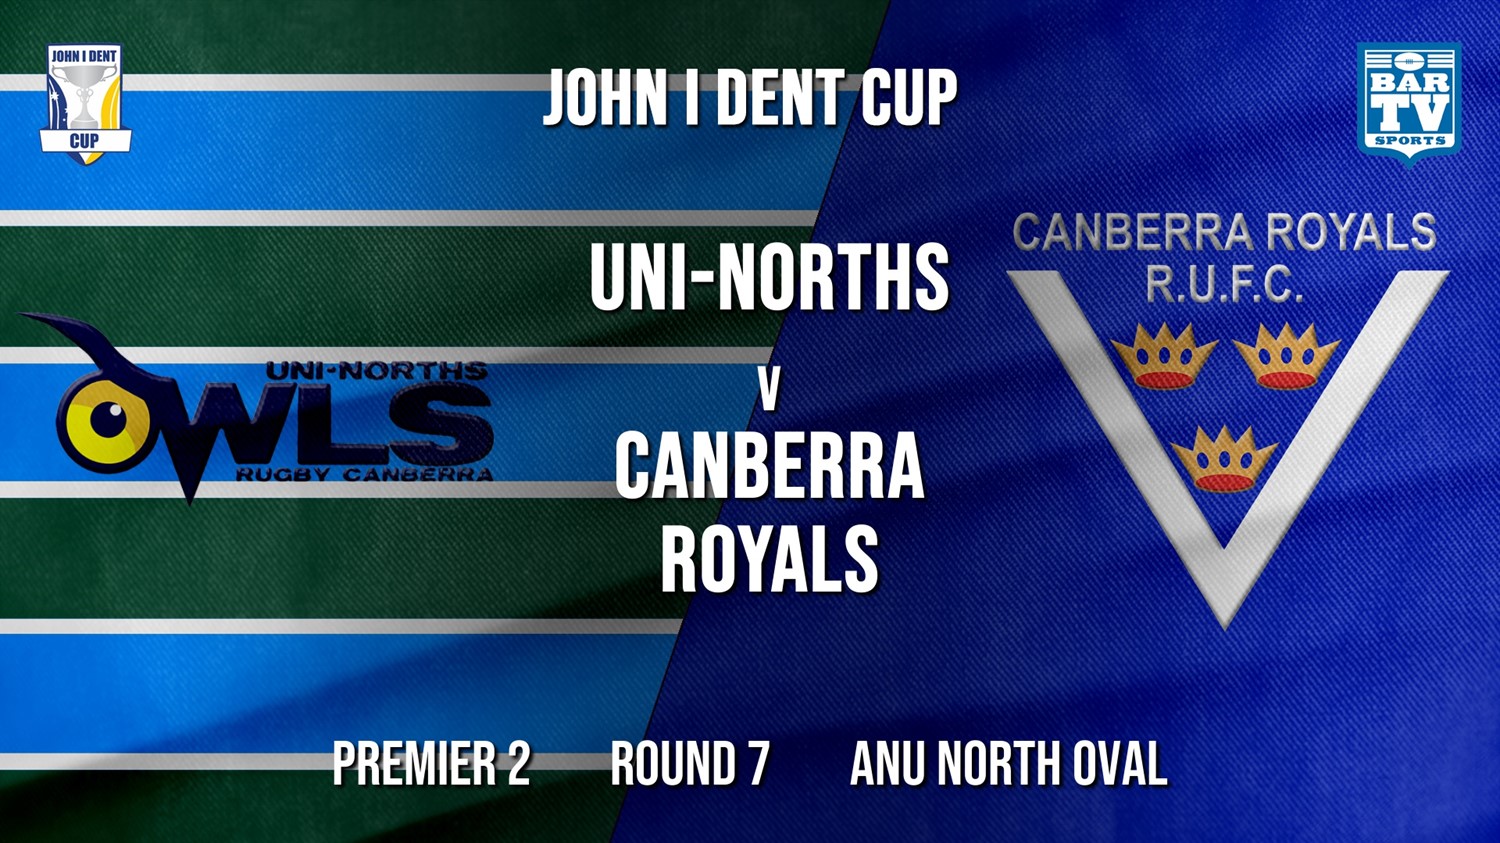 John I Dent Round 7 - Premier 2 - UNI-Norths v Canberra Royals Minigame Slate Image